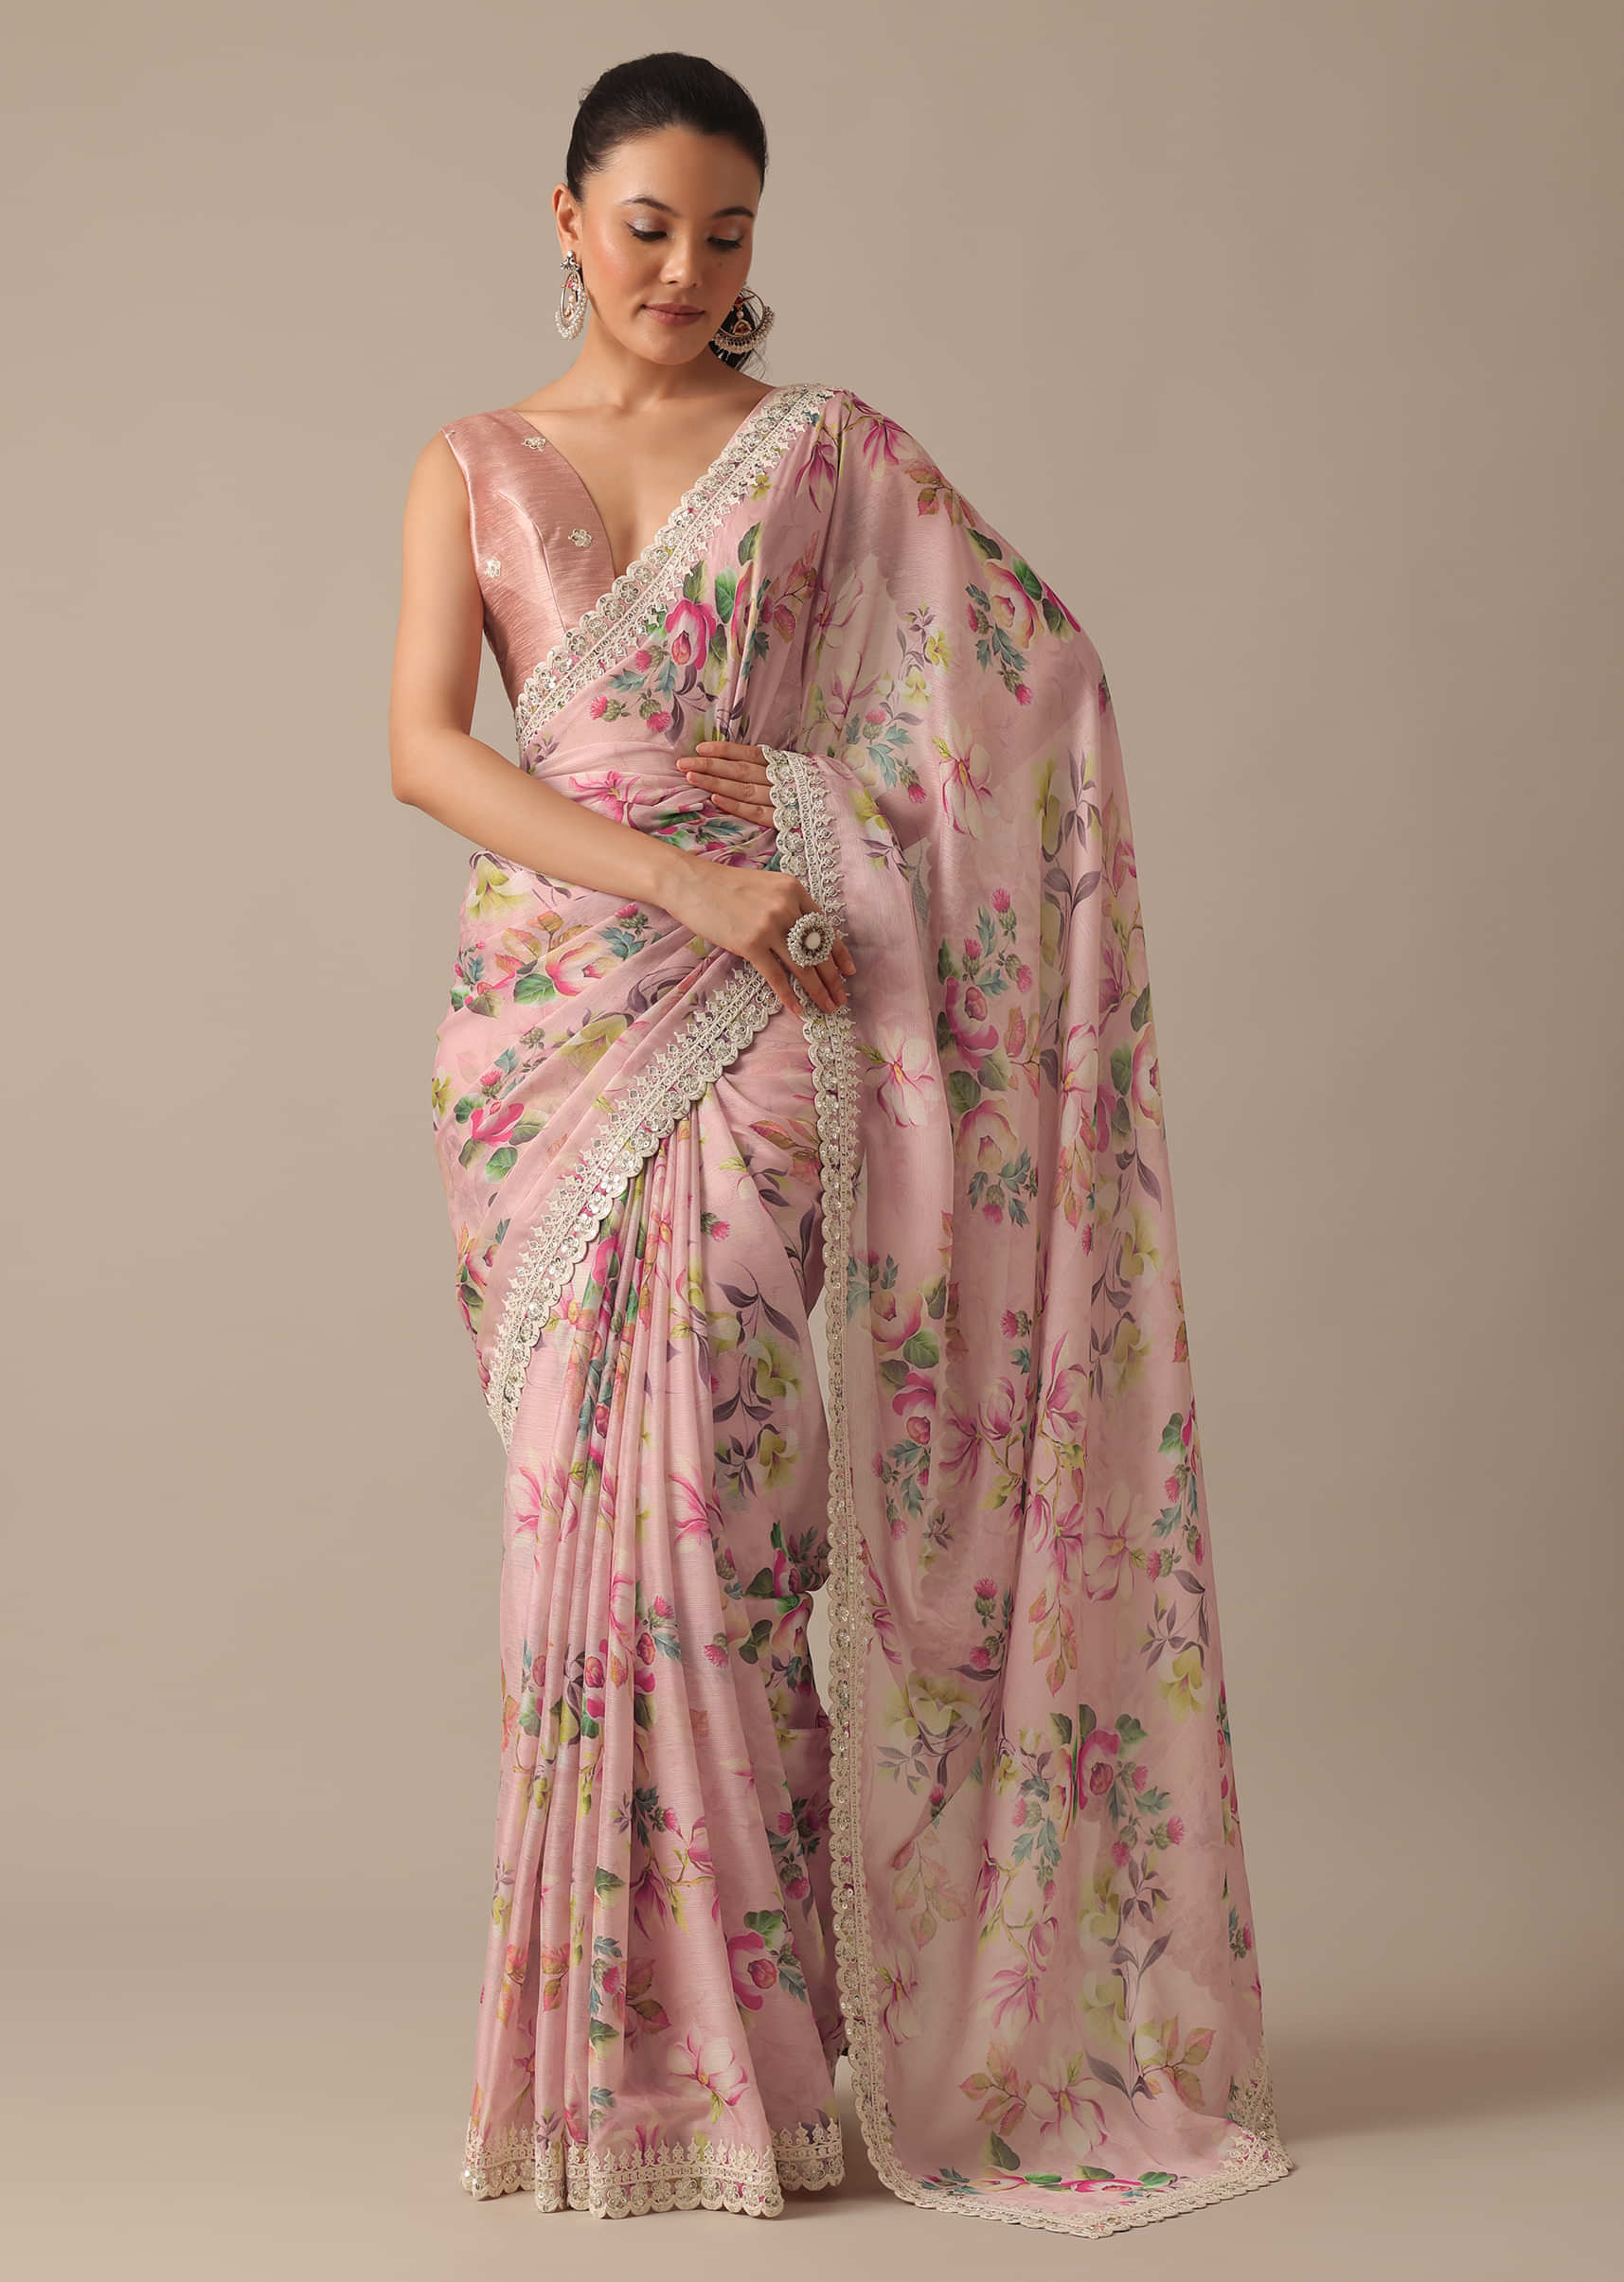 33 Tight leggings ideas  beautiful indian actress, indian beauty saree,  indian girls images